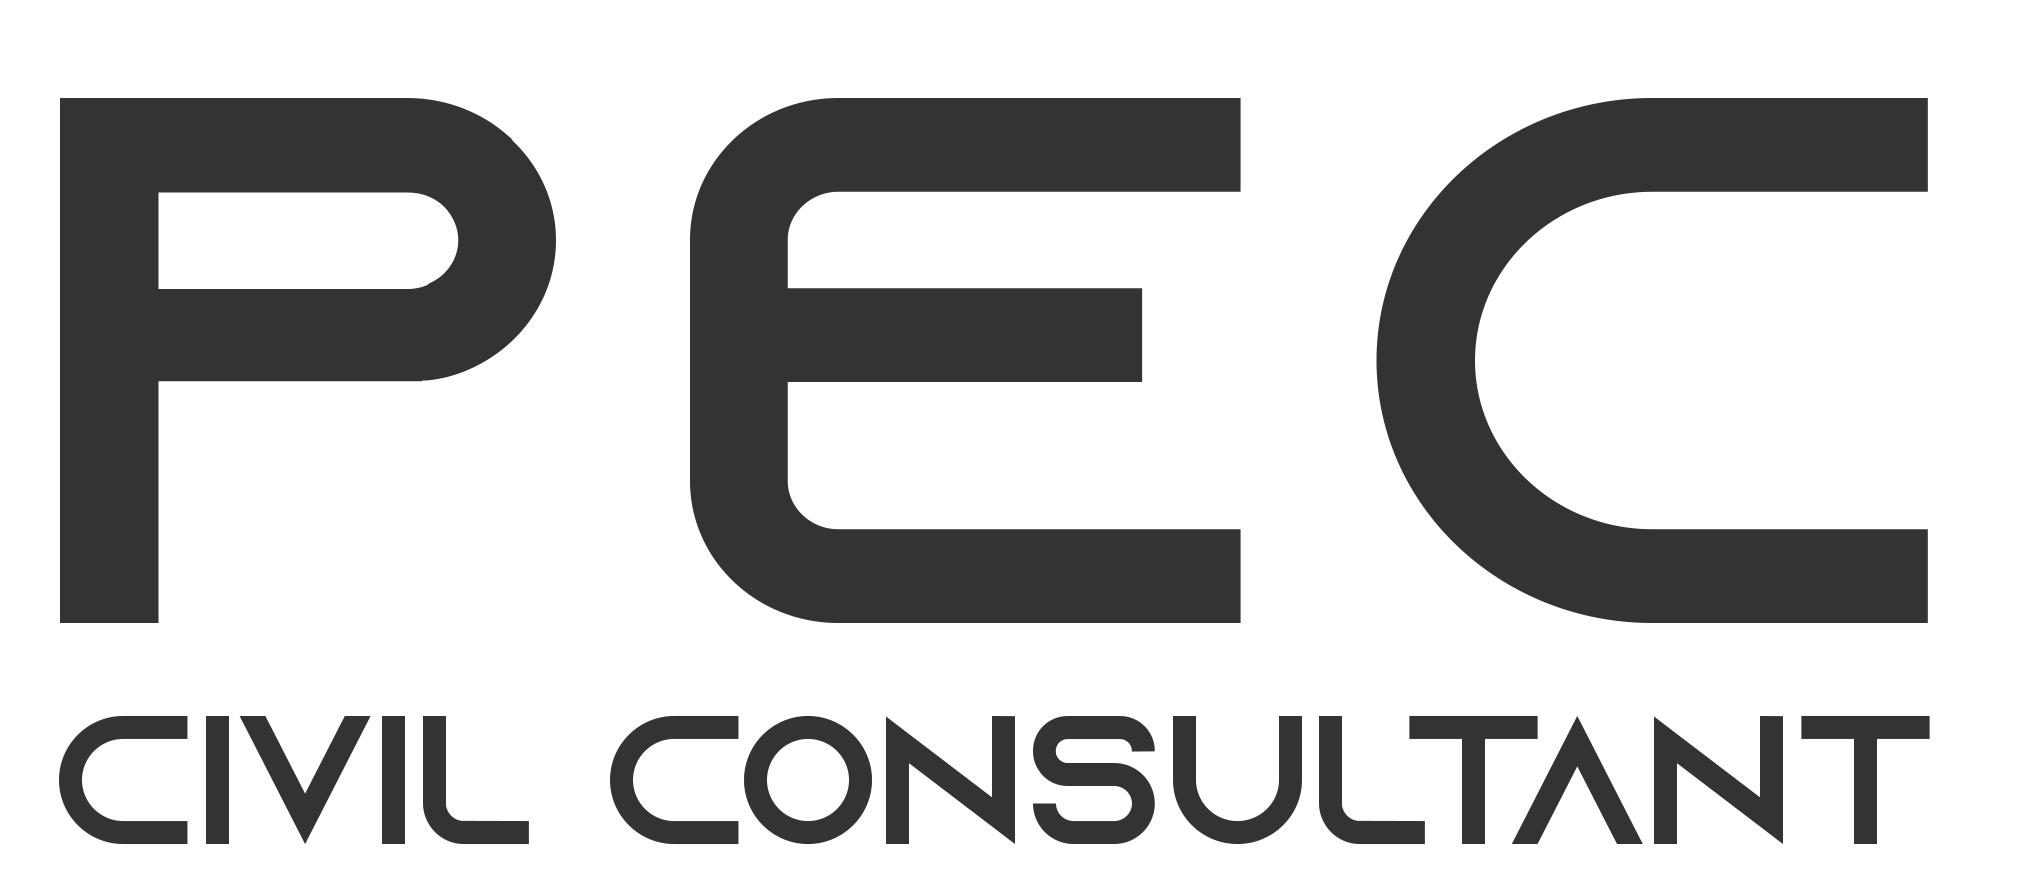 Pec Civil Consultant Pte. Ltd. logo